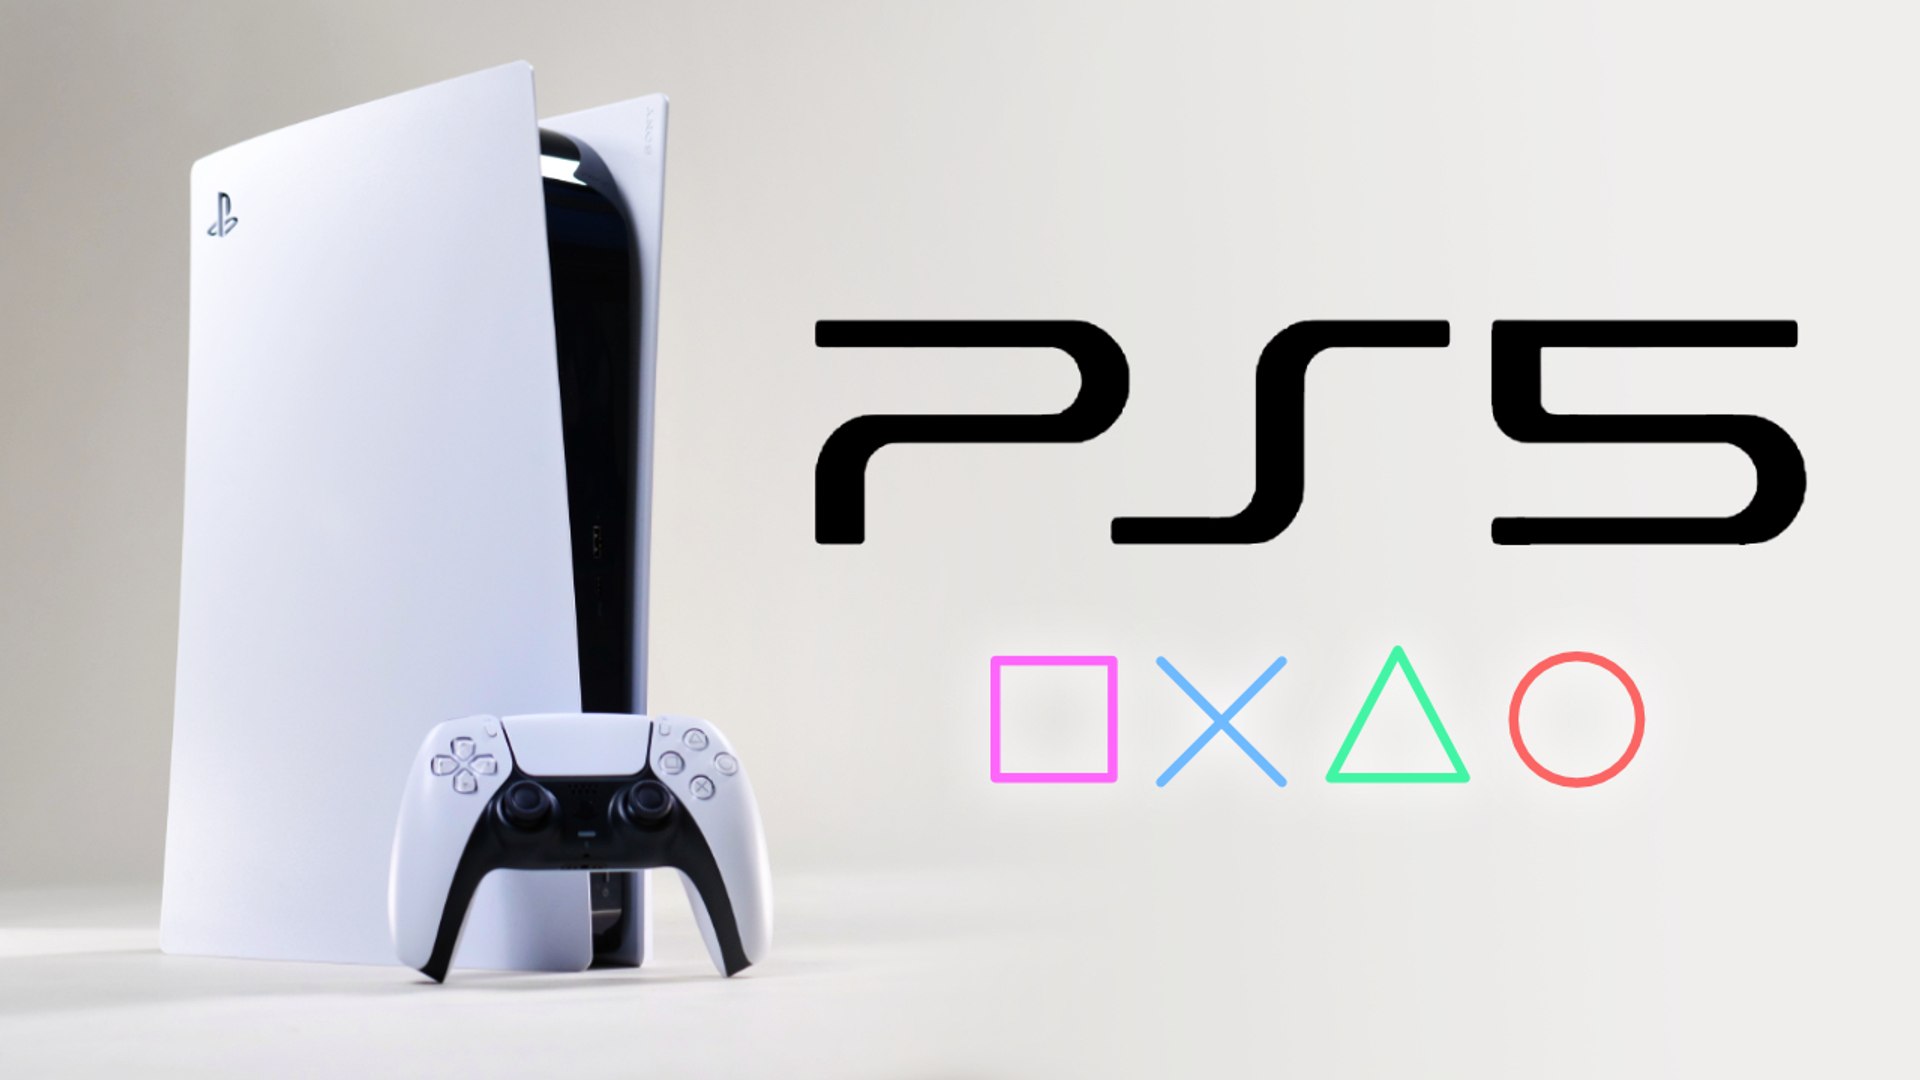 PlayStation 4 : tout savoir sur la console Sony PS4